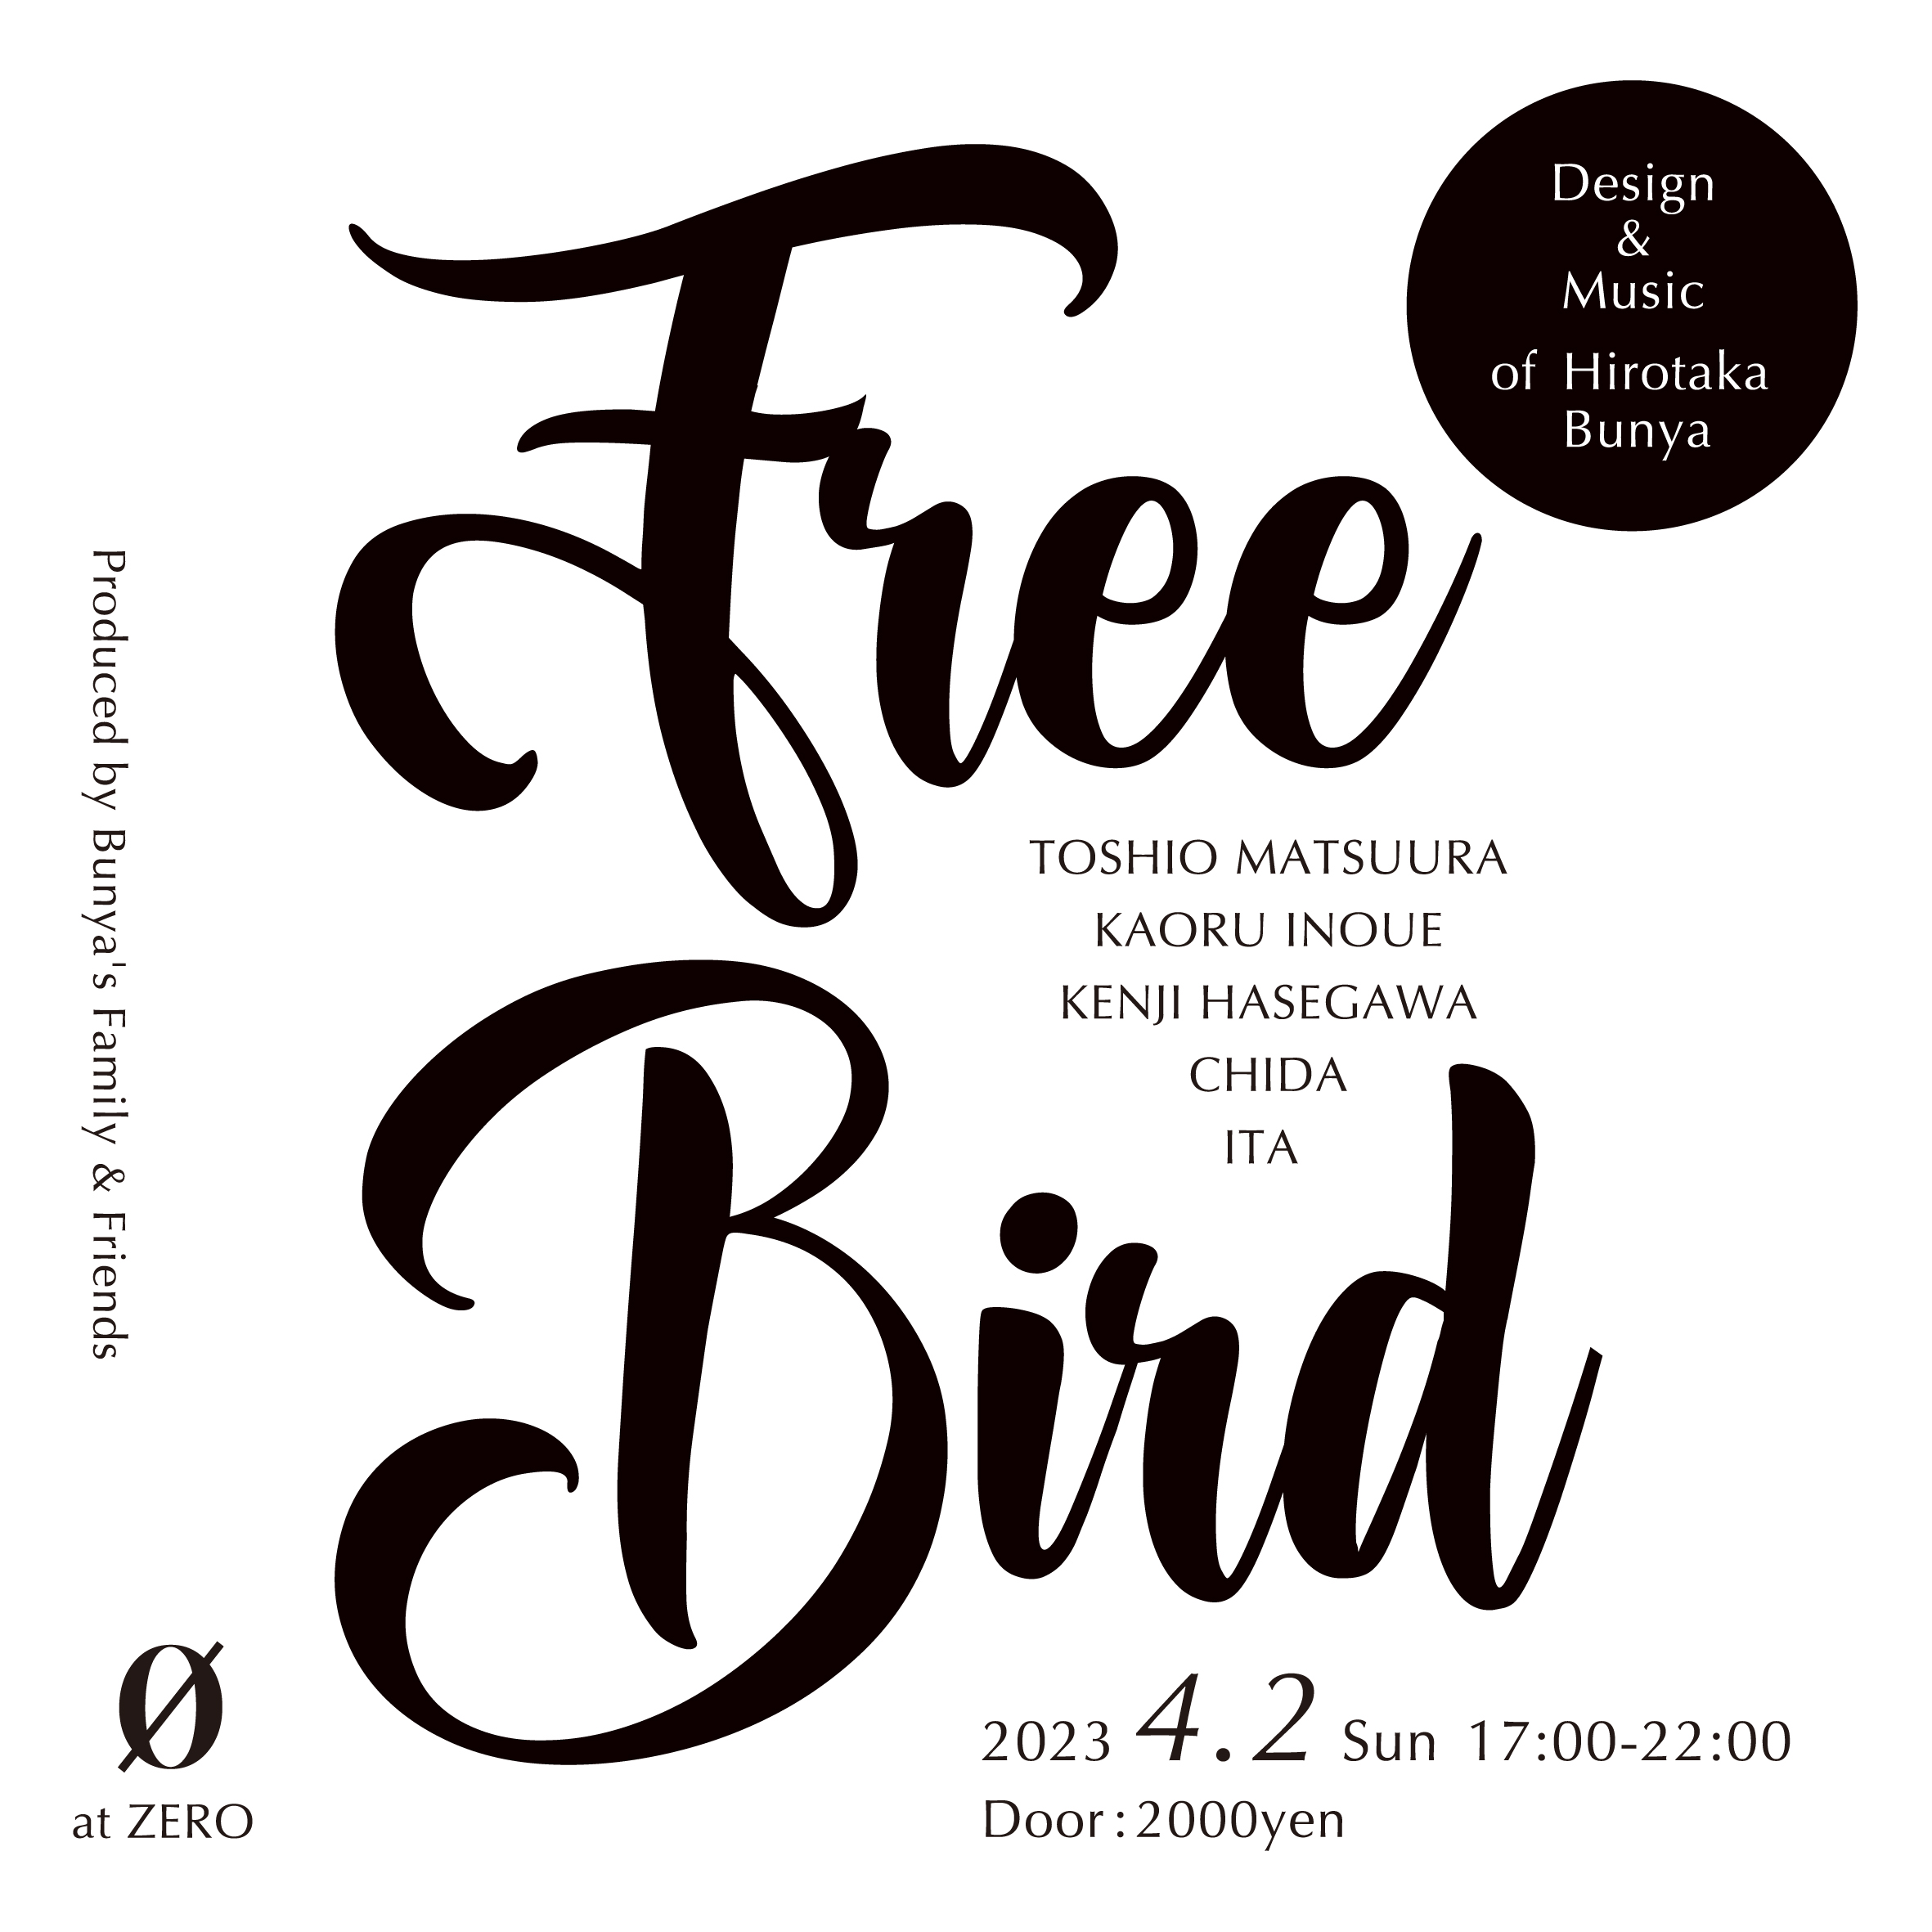 Free Bird Design and Music of Hirotaka Bunya